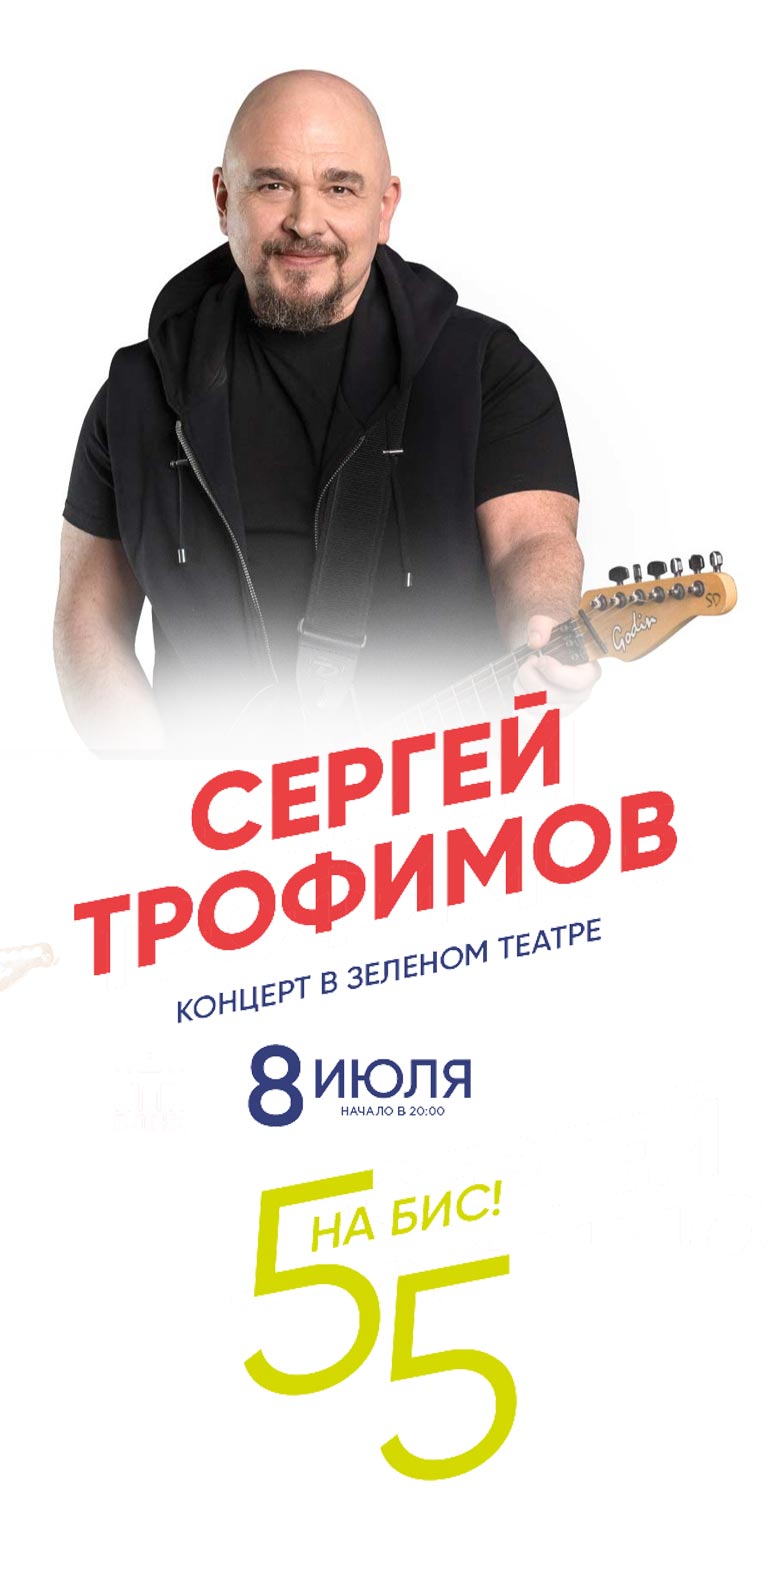 Купить Билеты на концерт Сергея Трофимова - 55 на Бис! 8 июля 2022 в Зеленом Театре, ВДНХ